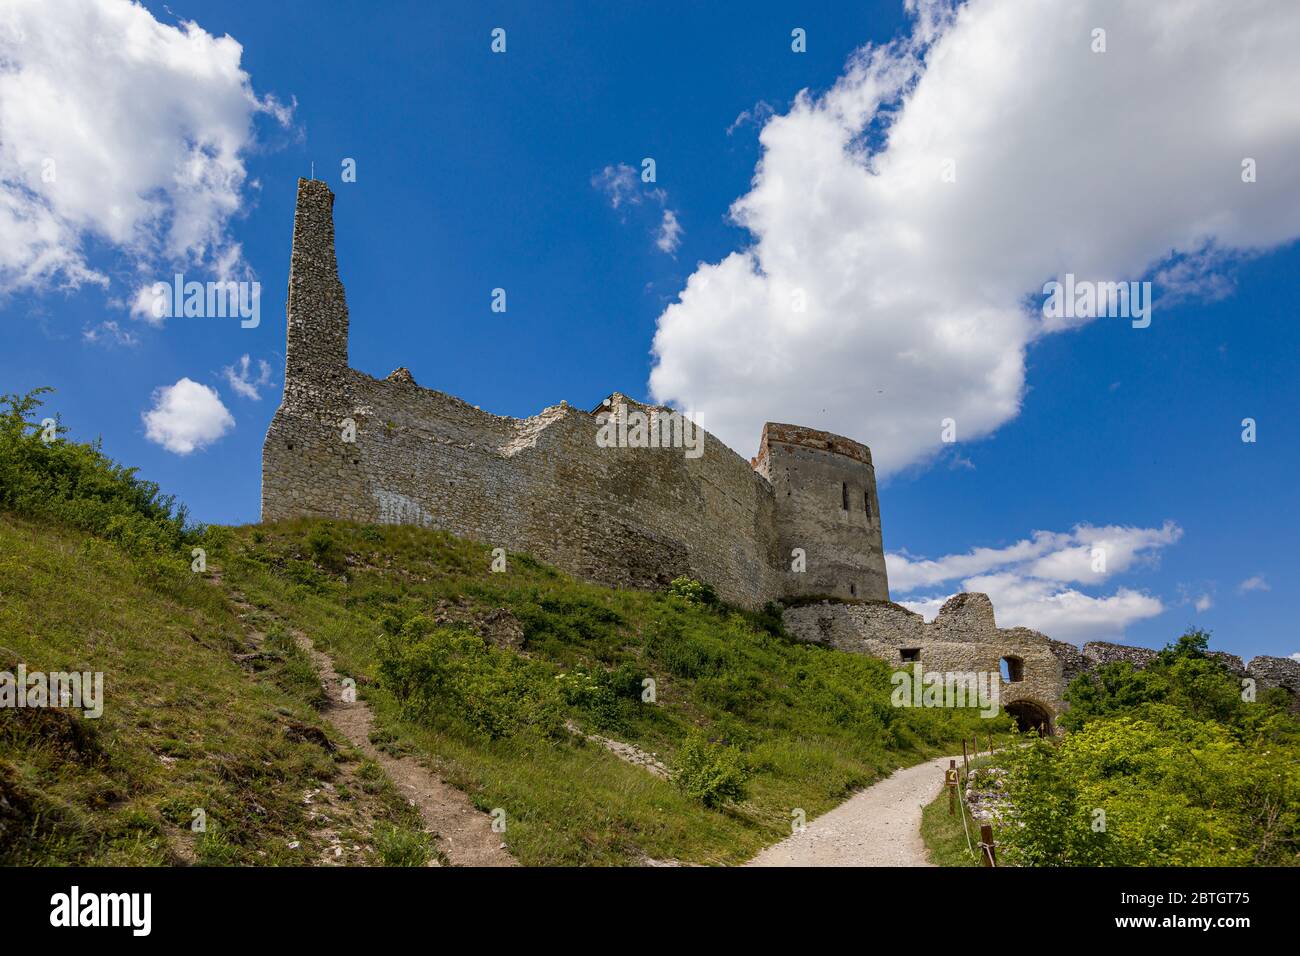 Les ruines du château de Cachtice au-dessus du village de Cachtice, Slovaquie Banque D'Images